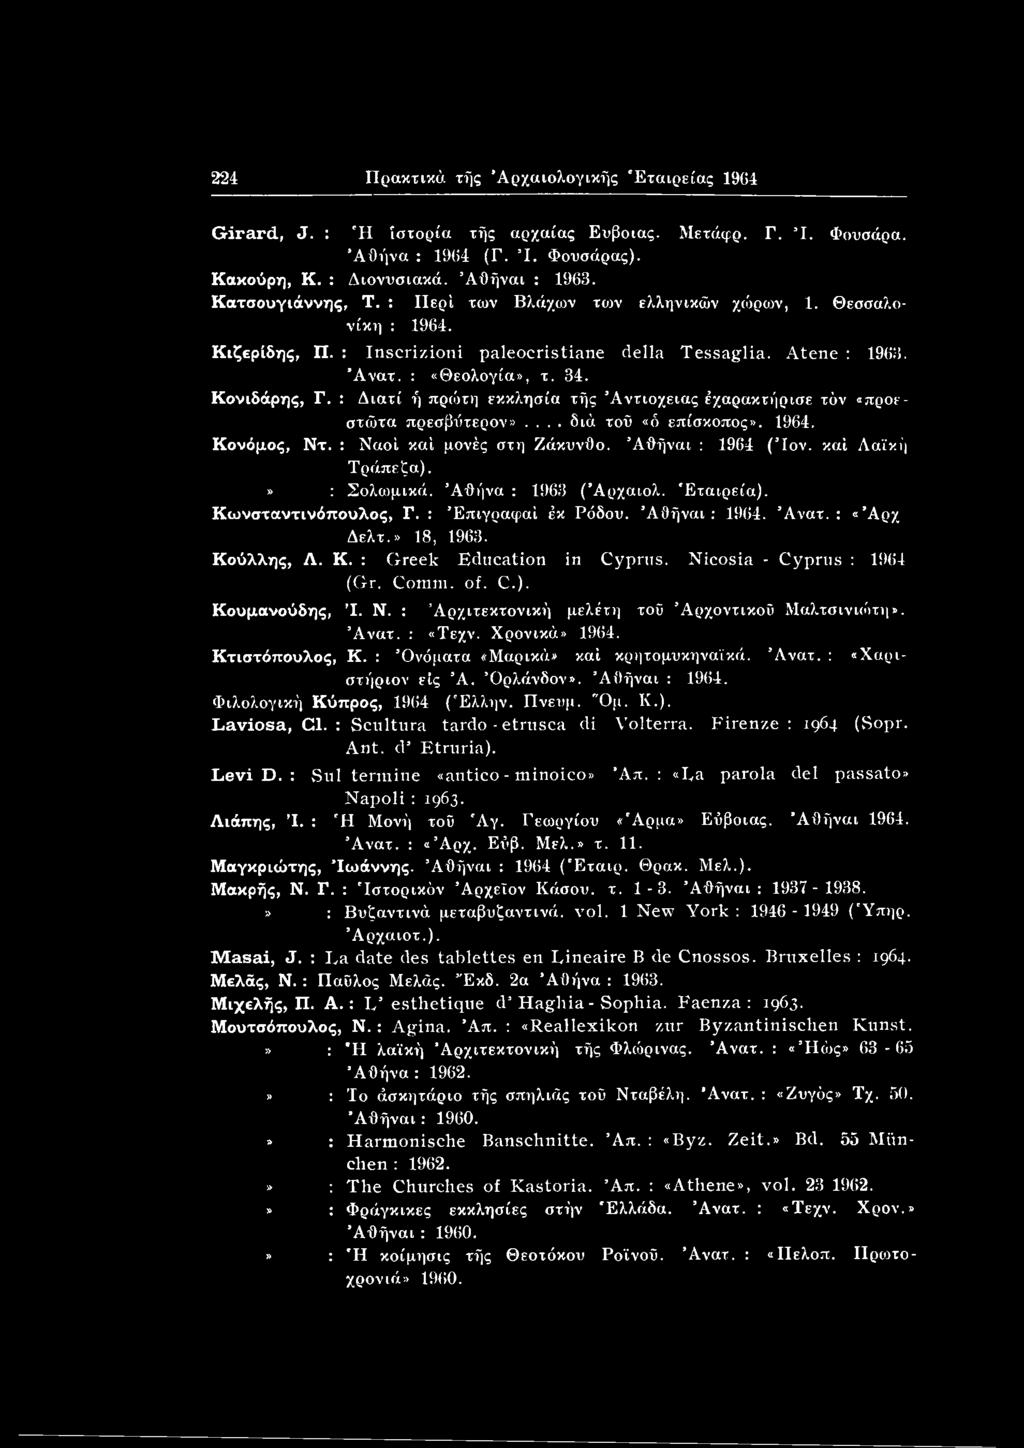 Nicosia - Cyprus : 1964 Κουμανούδης, Ί. N. : (Gr. Coram. of. C.). Αρχιτεκτονική μελέτη τοΰ Αρχοντικού Μαλτσινιώτη». Άνατ. : «Τεχν. Χρονικά» 1964. Κτιστόπουλος, Κ.